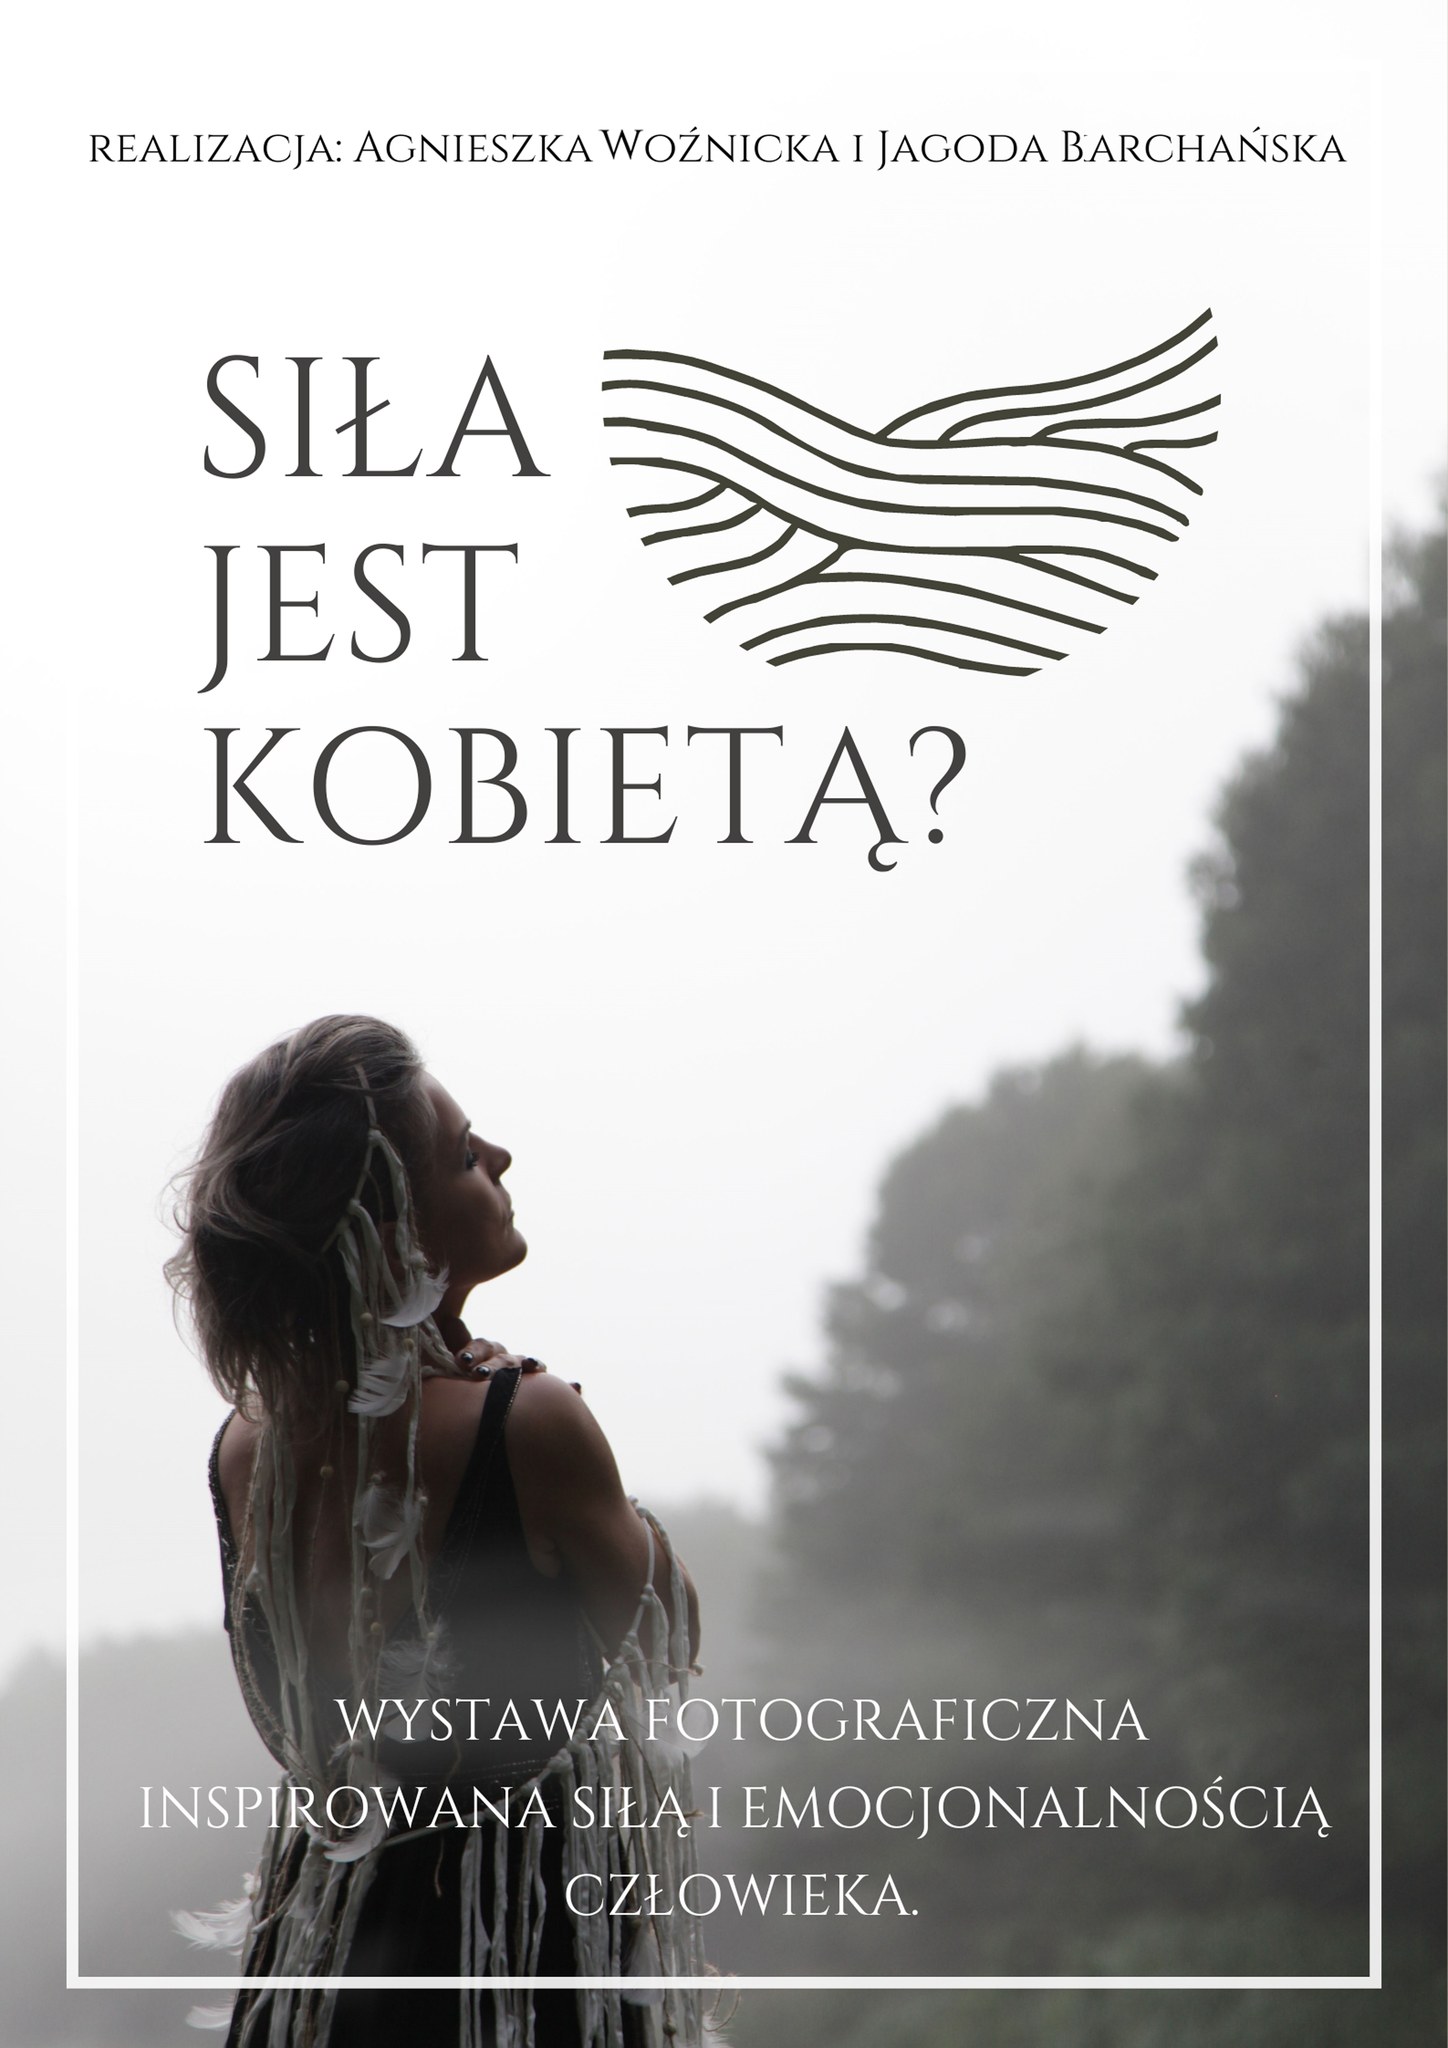 zdjęcie kobiety w słowiańskim stroju, obejmuje się ramionami, ma zamknięty oczy